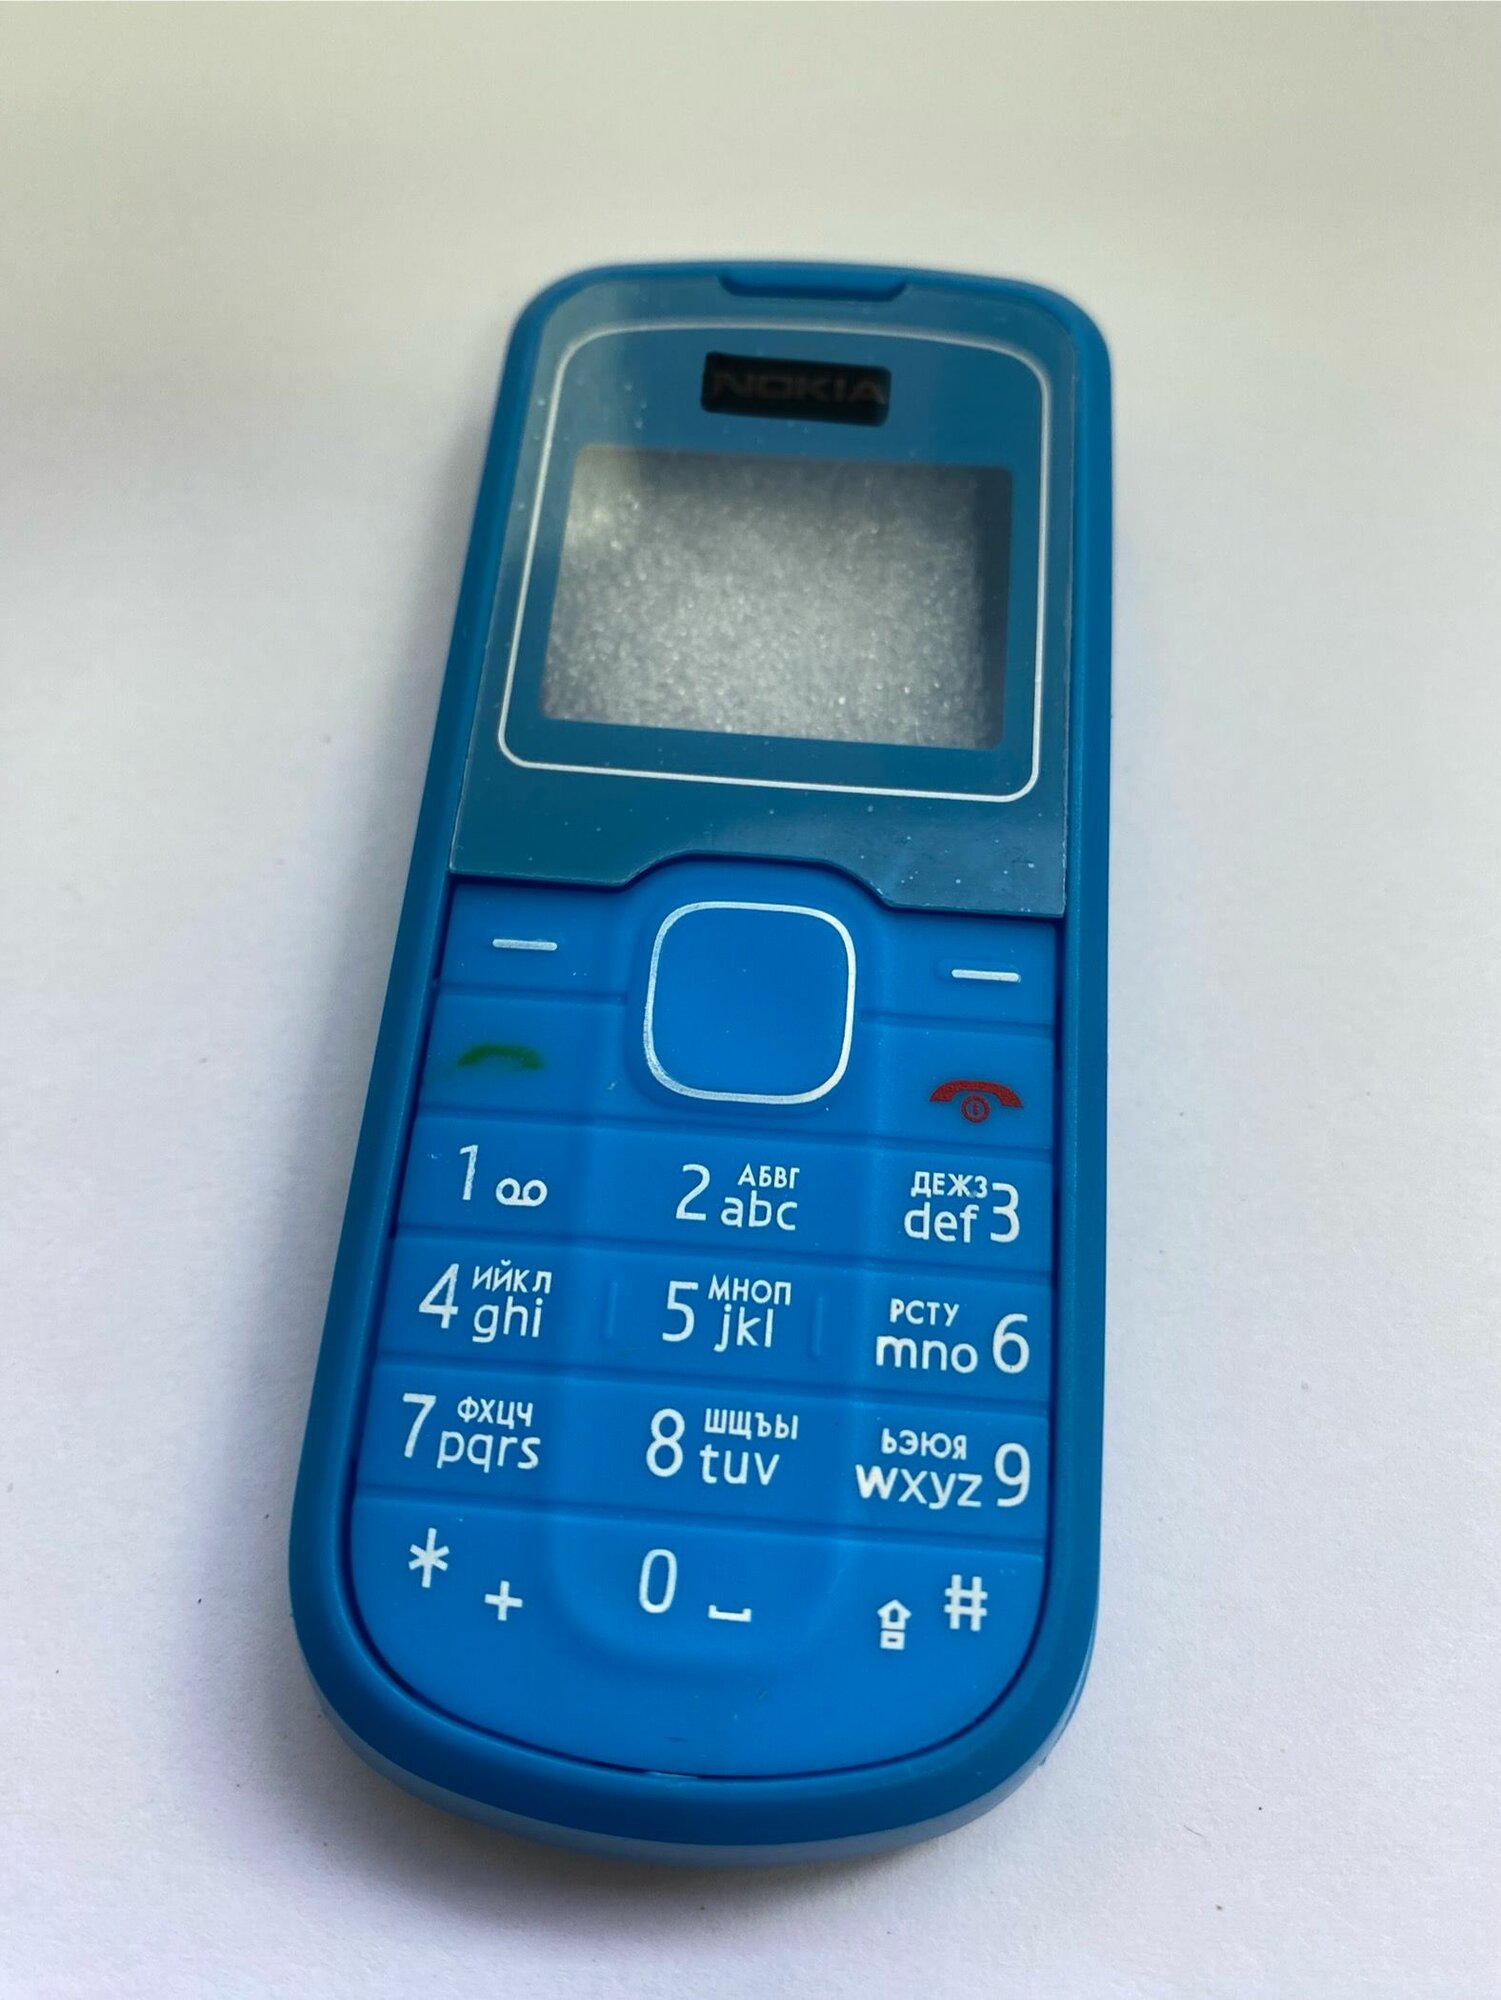 Корпус для Nokia 1202